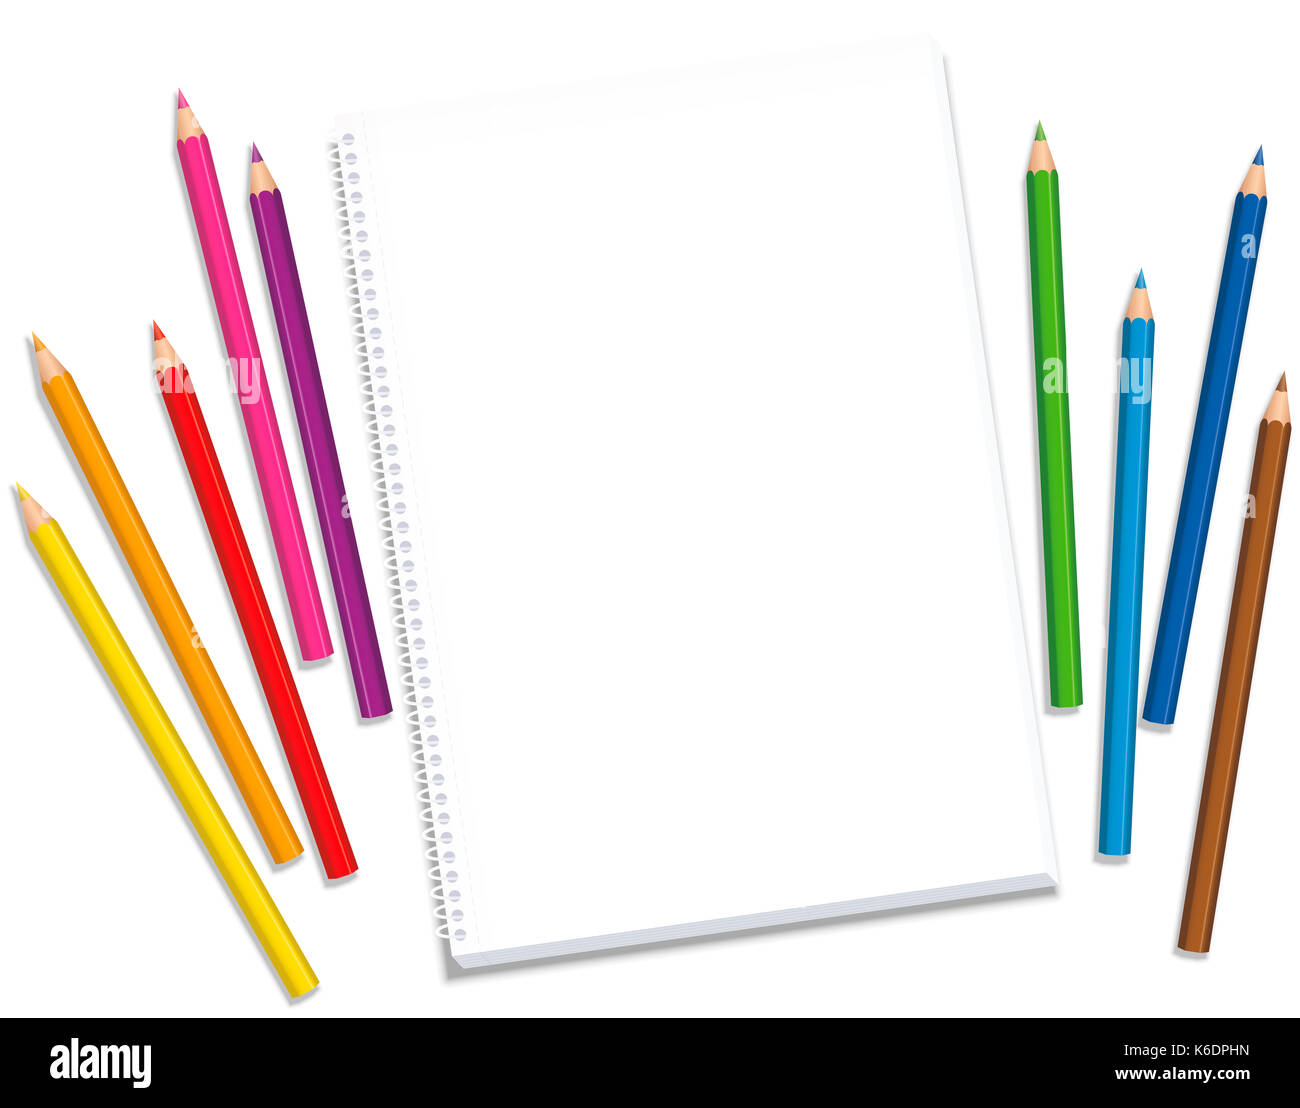 Sketchpad mit farbigen Kreiden Abstand um das leere Papier warten auf die Künstler Inspiration und kreative Ideen. Stockfoto